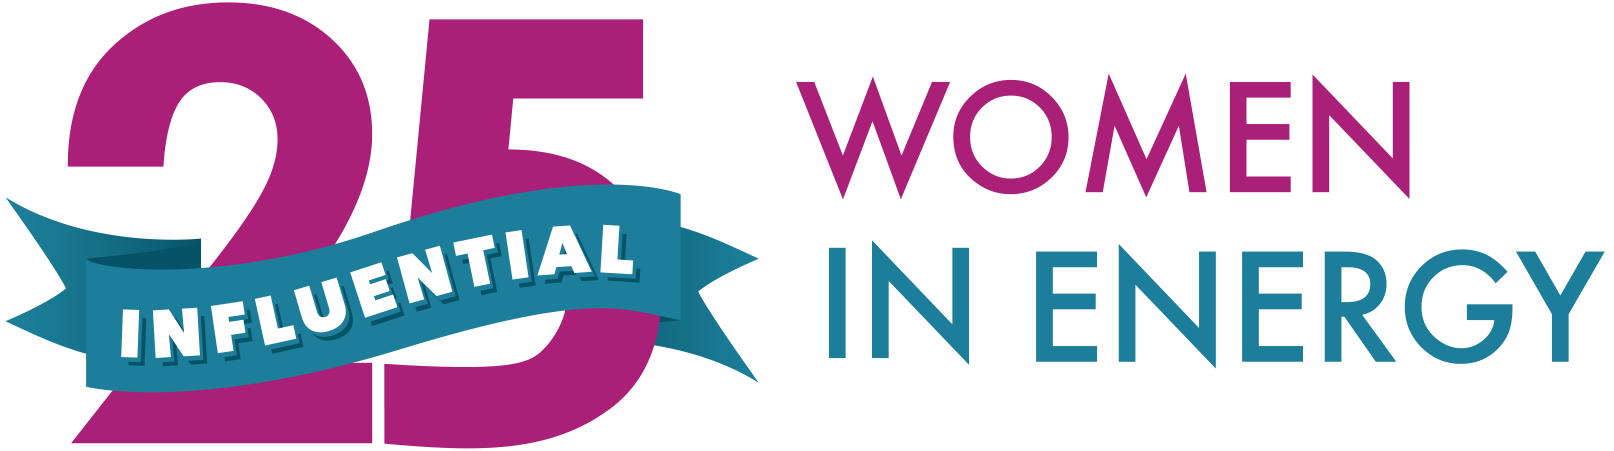 women in energy logo